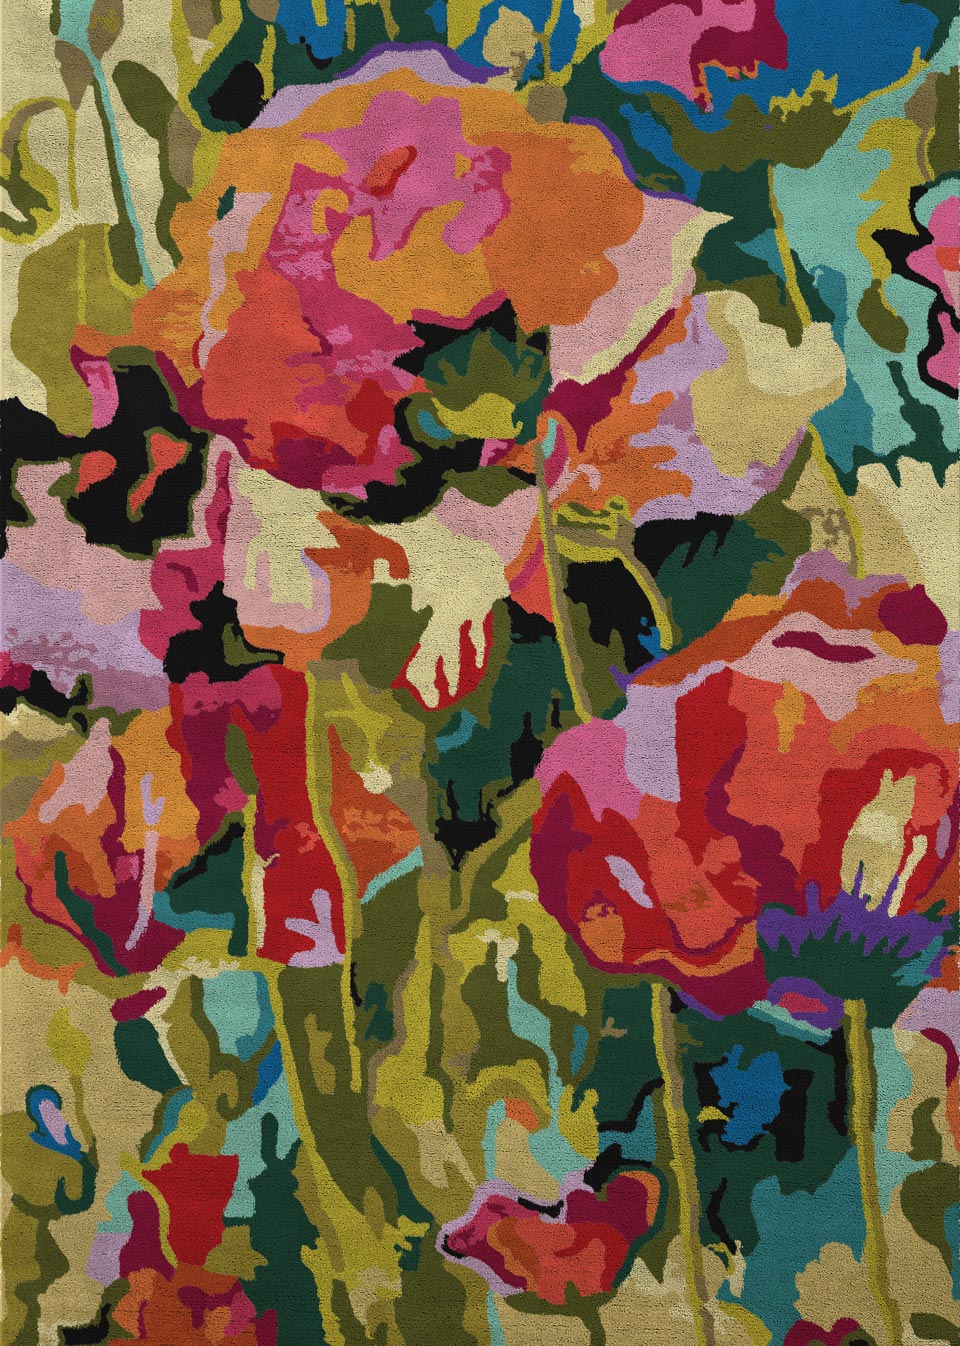 Spring tapis floral aux couleurs printanières 170X240. MA Salgueiro. 